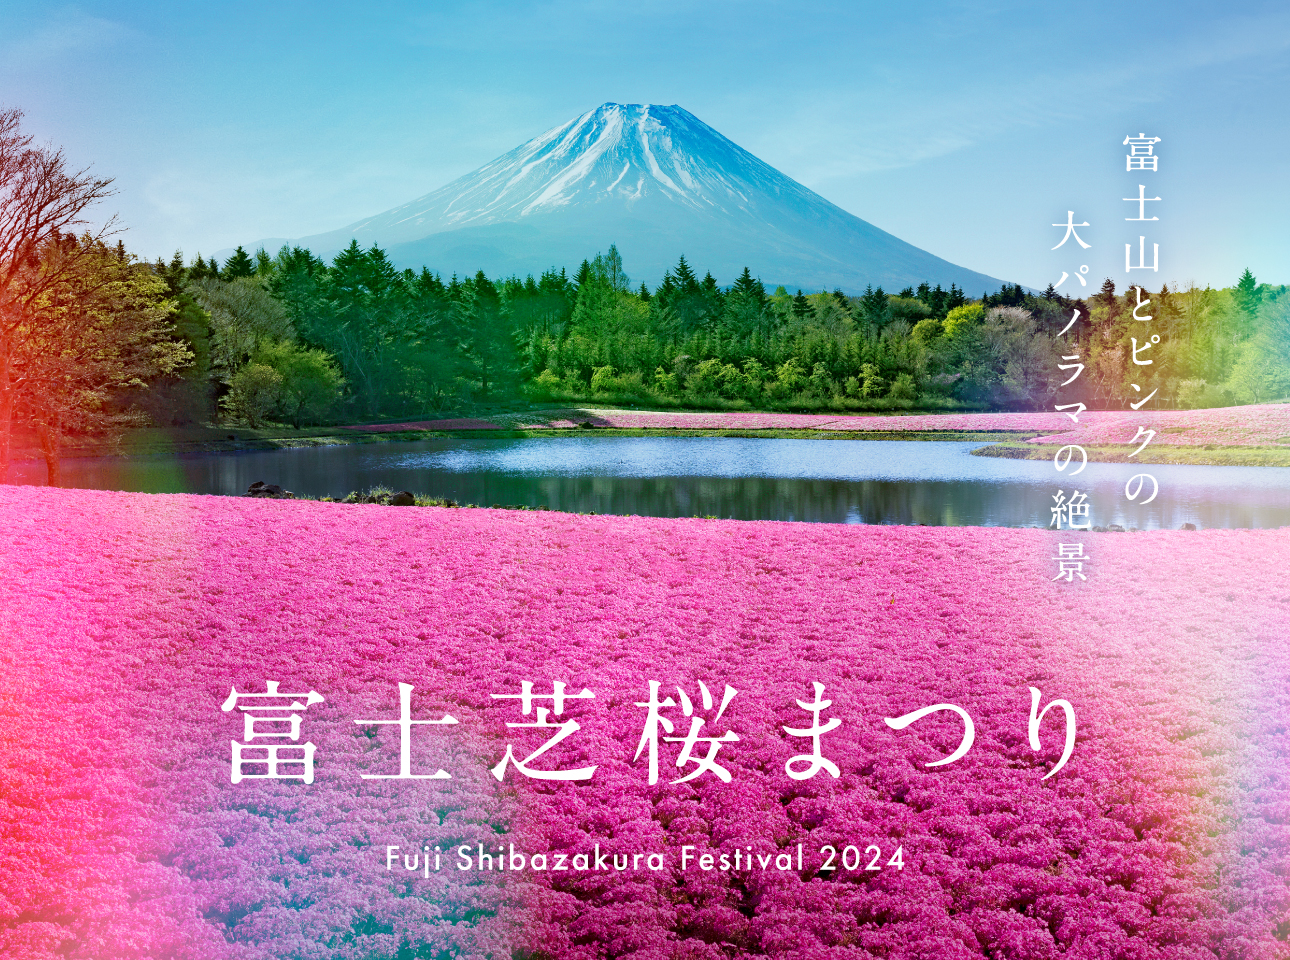 Fuji Shiba Sakura Festival